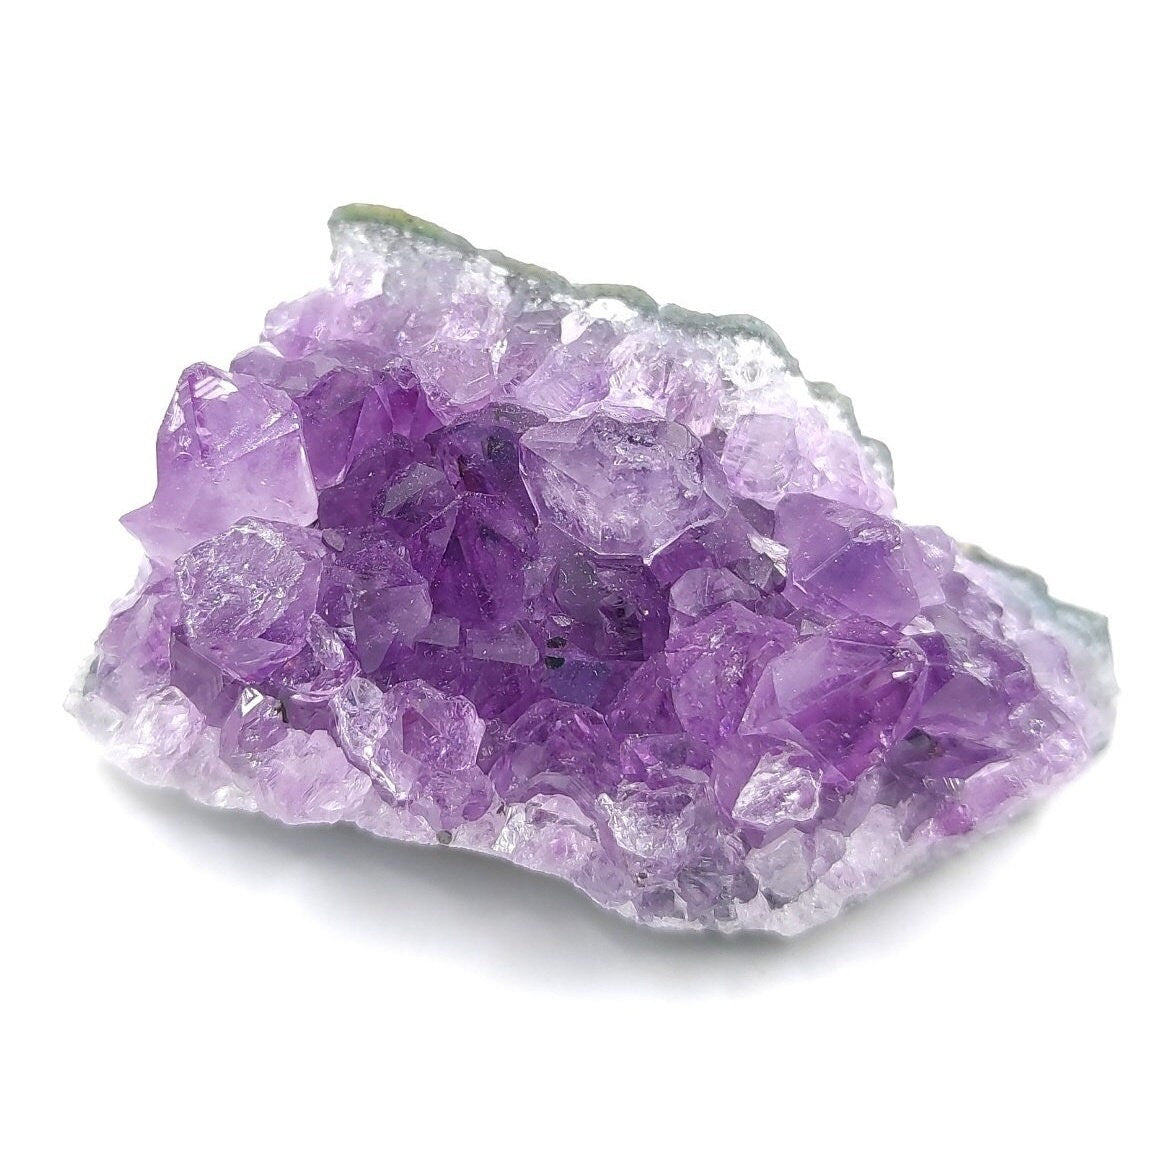 21g Amethyst Cluster from Uruguay - Small Amethyst Crystal - Purple Amethyst Mineral - Natural Amethyst Specimen from Artigas, Uruguay